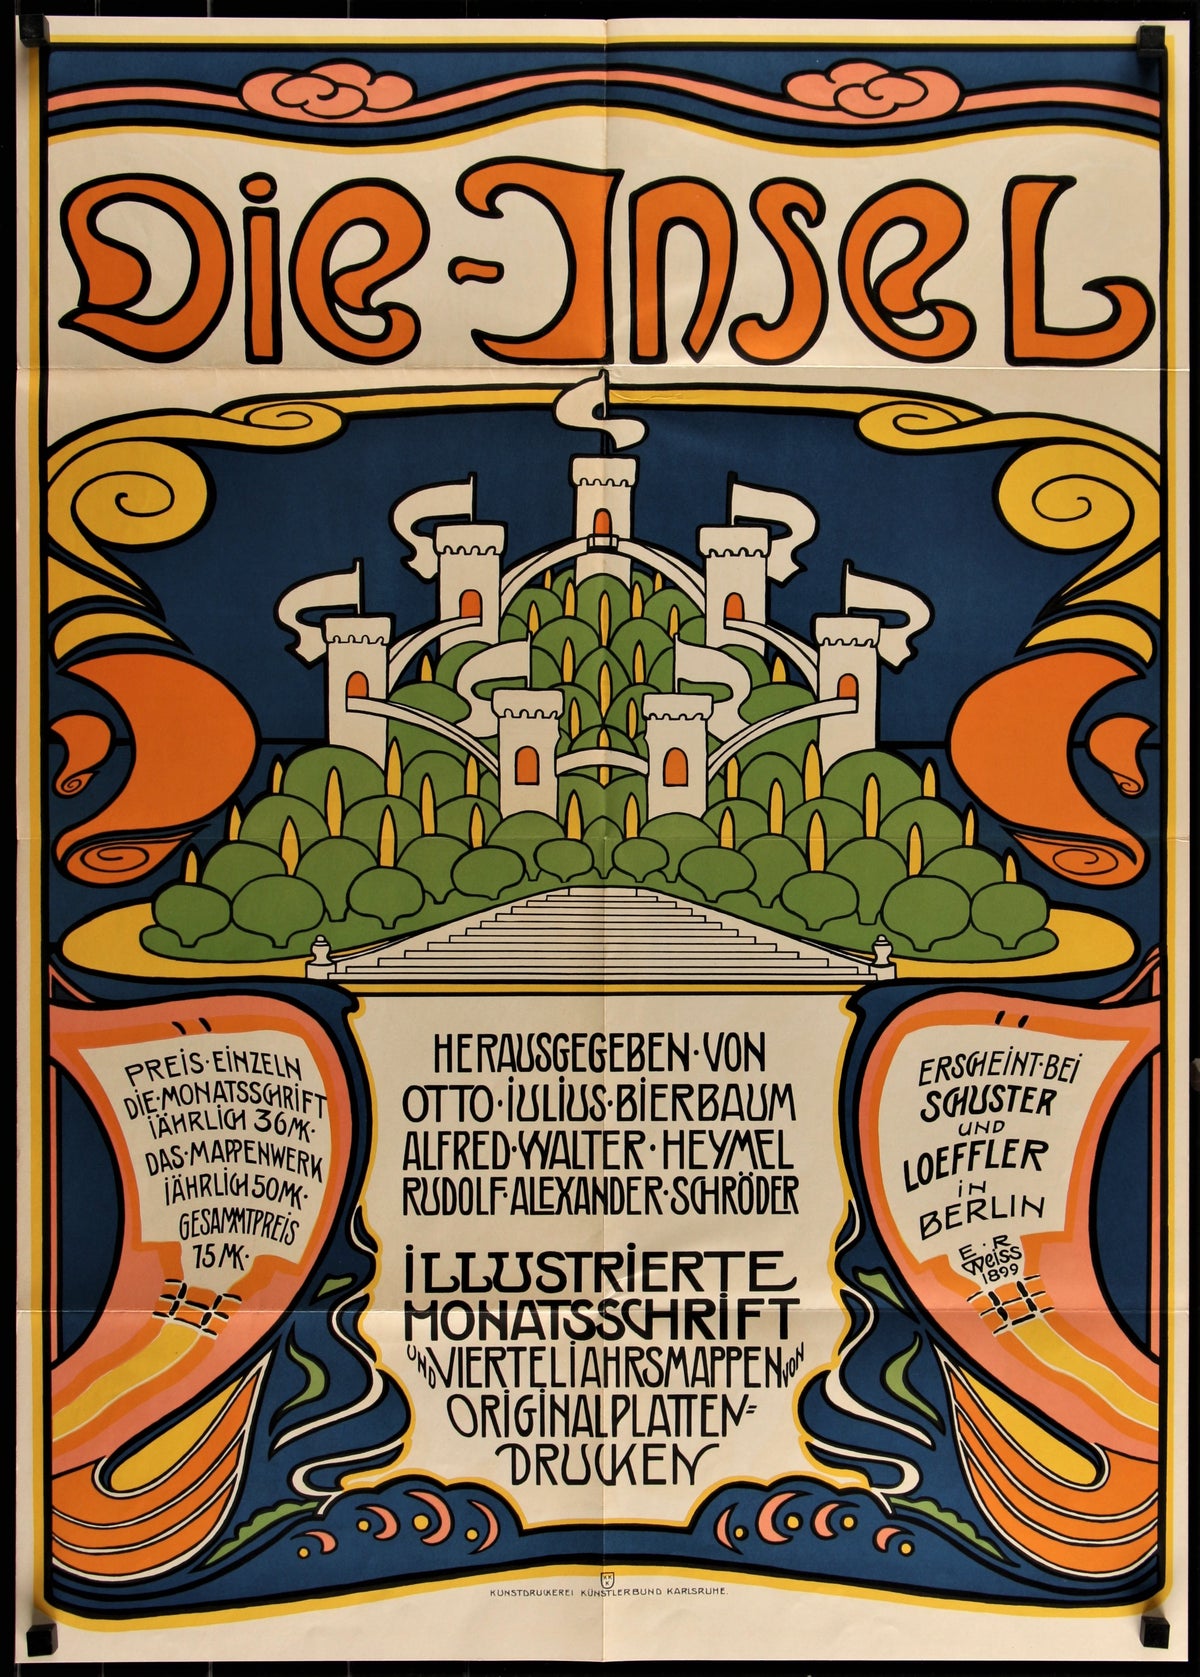 Das Deutsche Plakat_3 - Authentic Vintage Poster